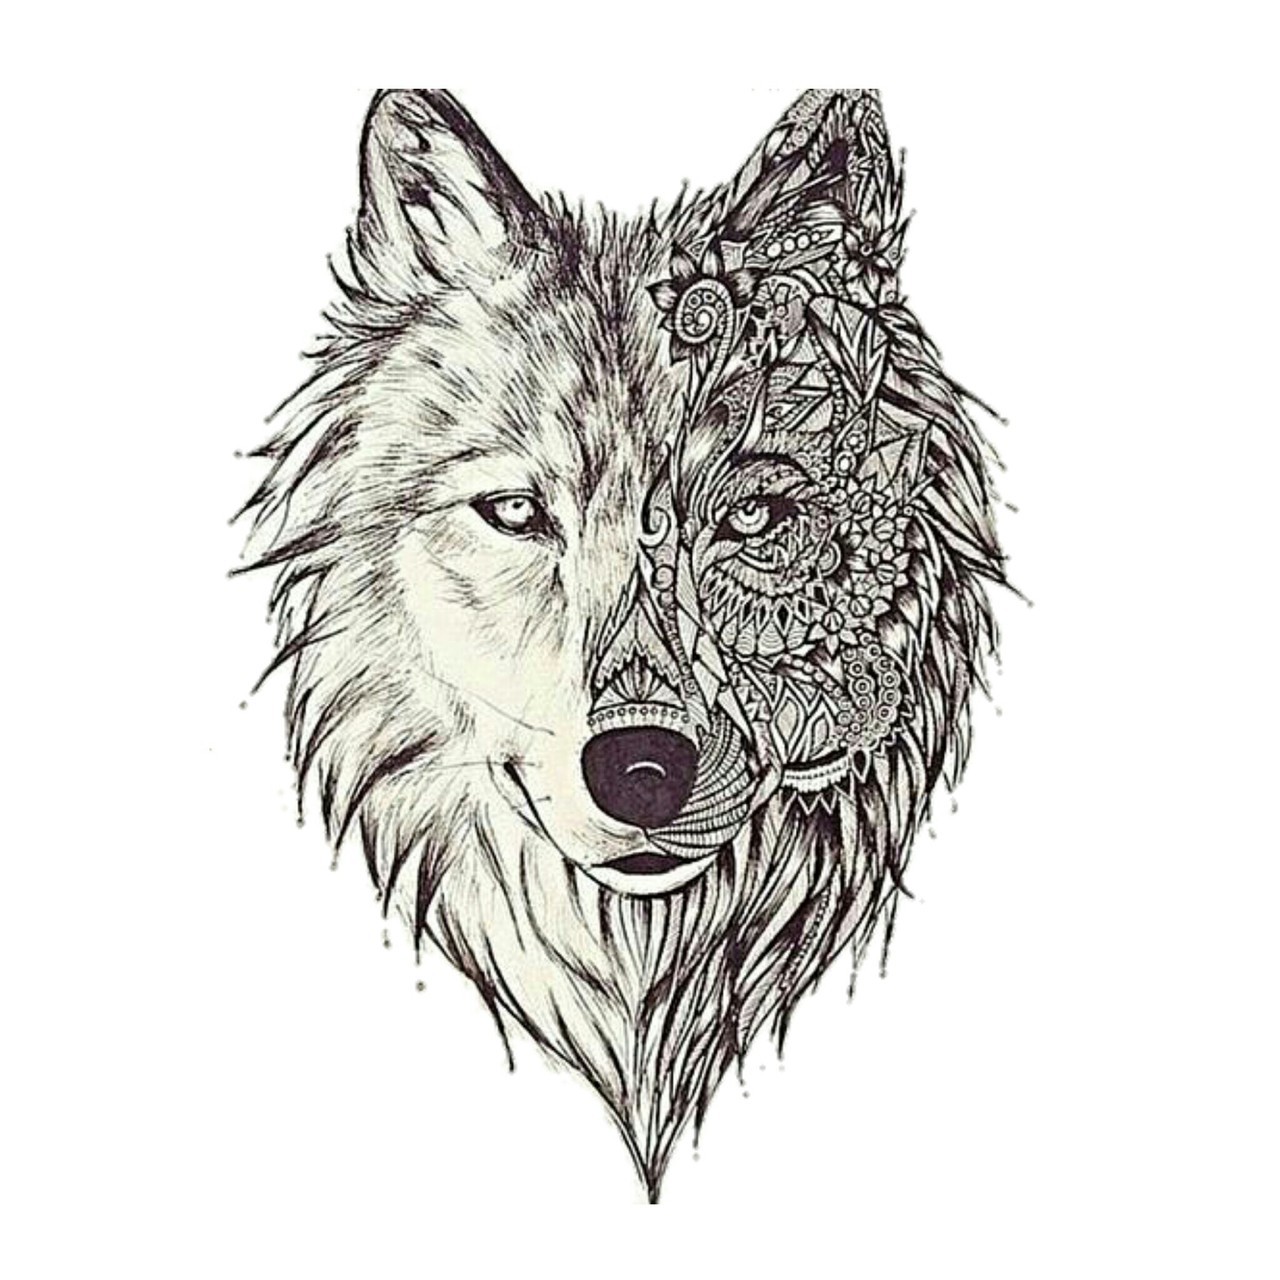 Wolf, Art, And Drawing Image - Wolf Pattern Tattoo - 1280x1280 ...